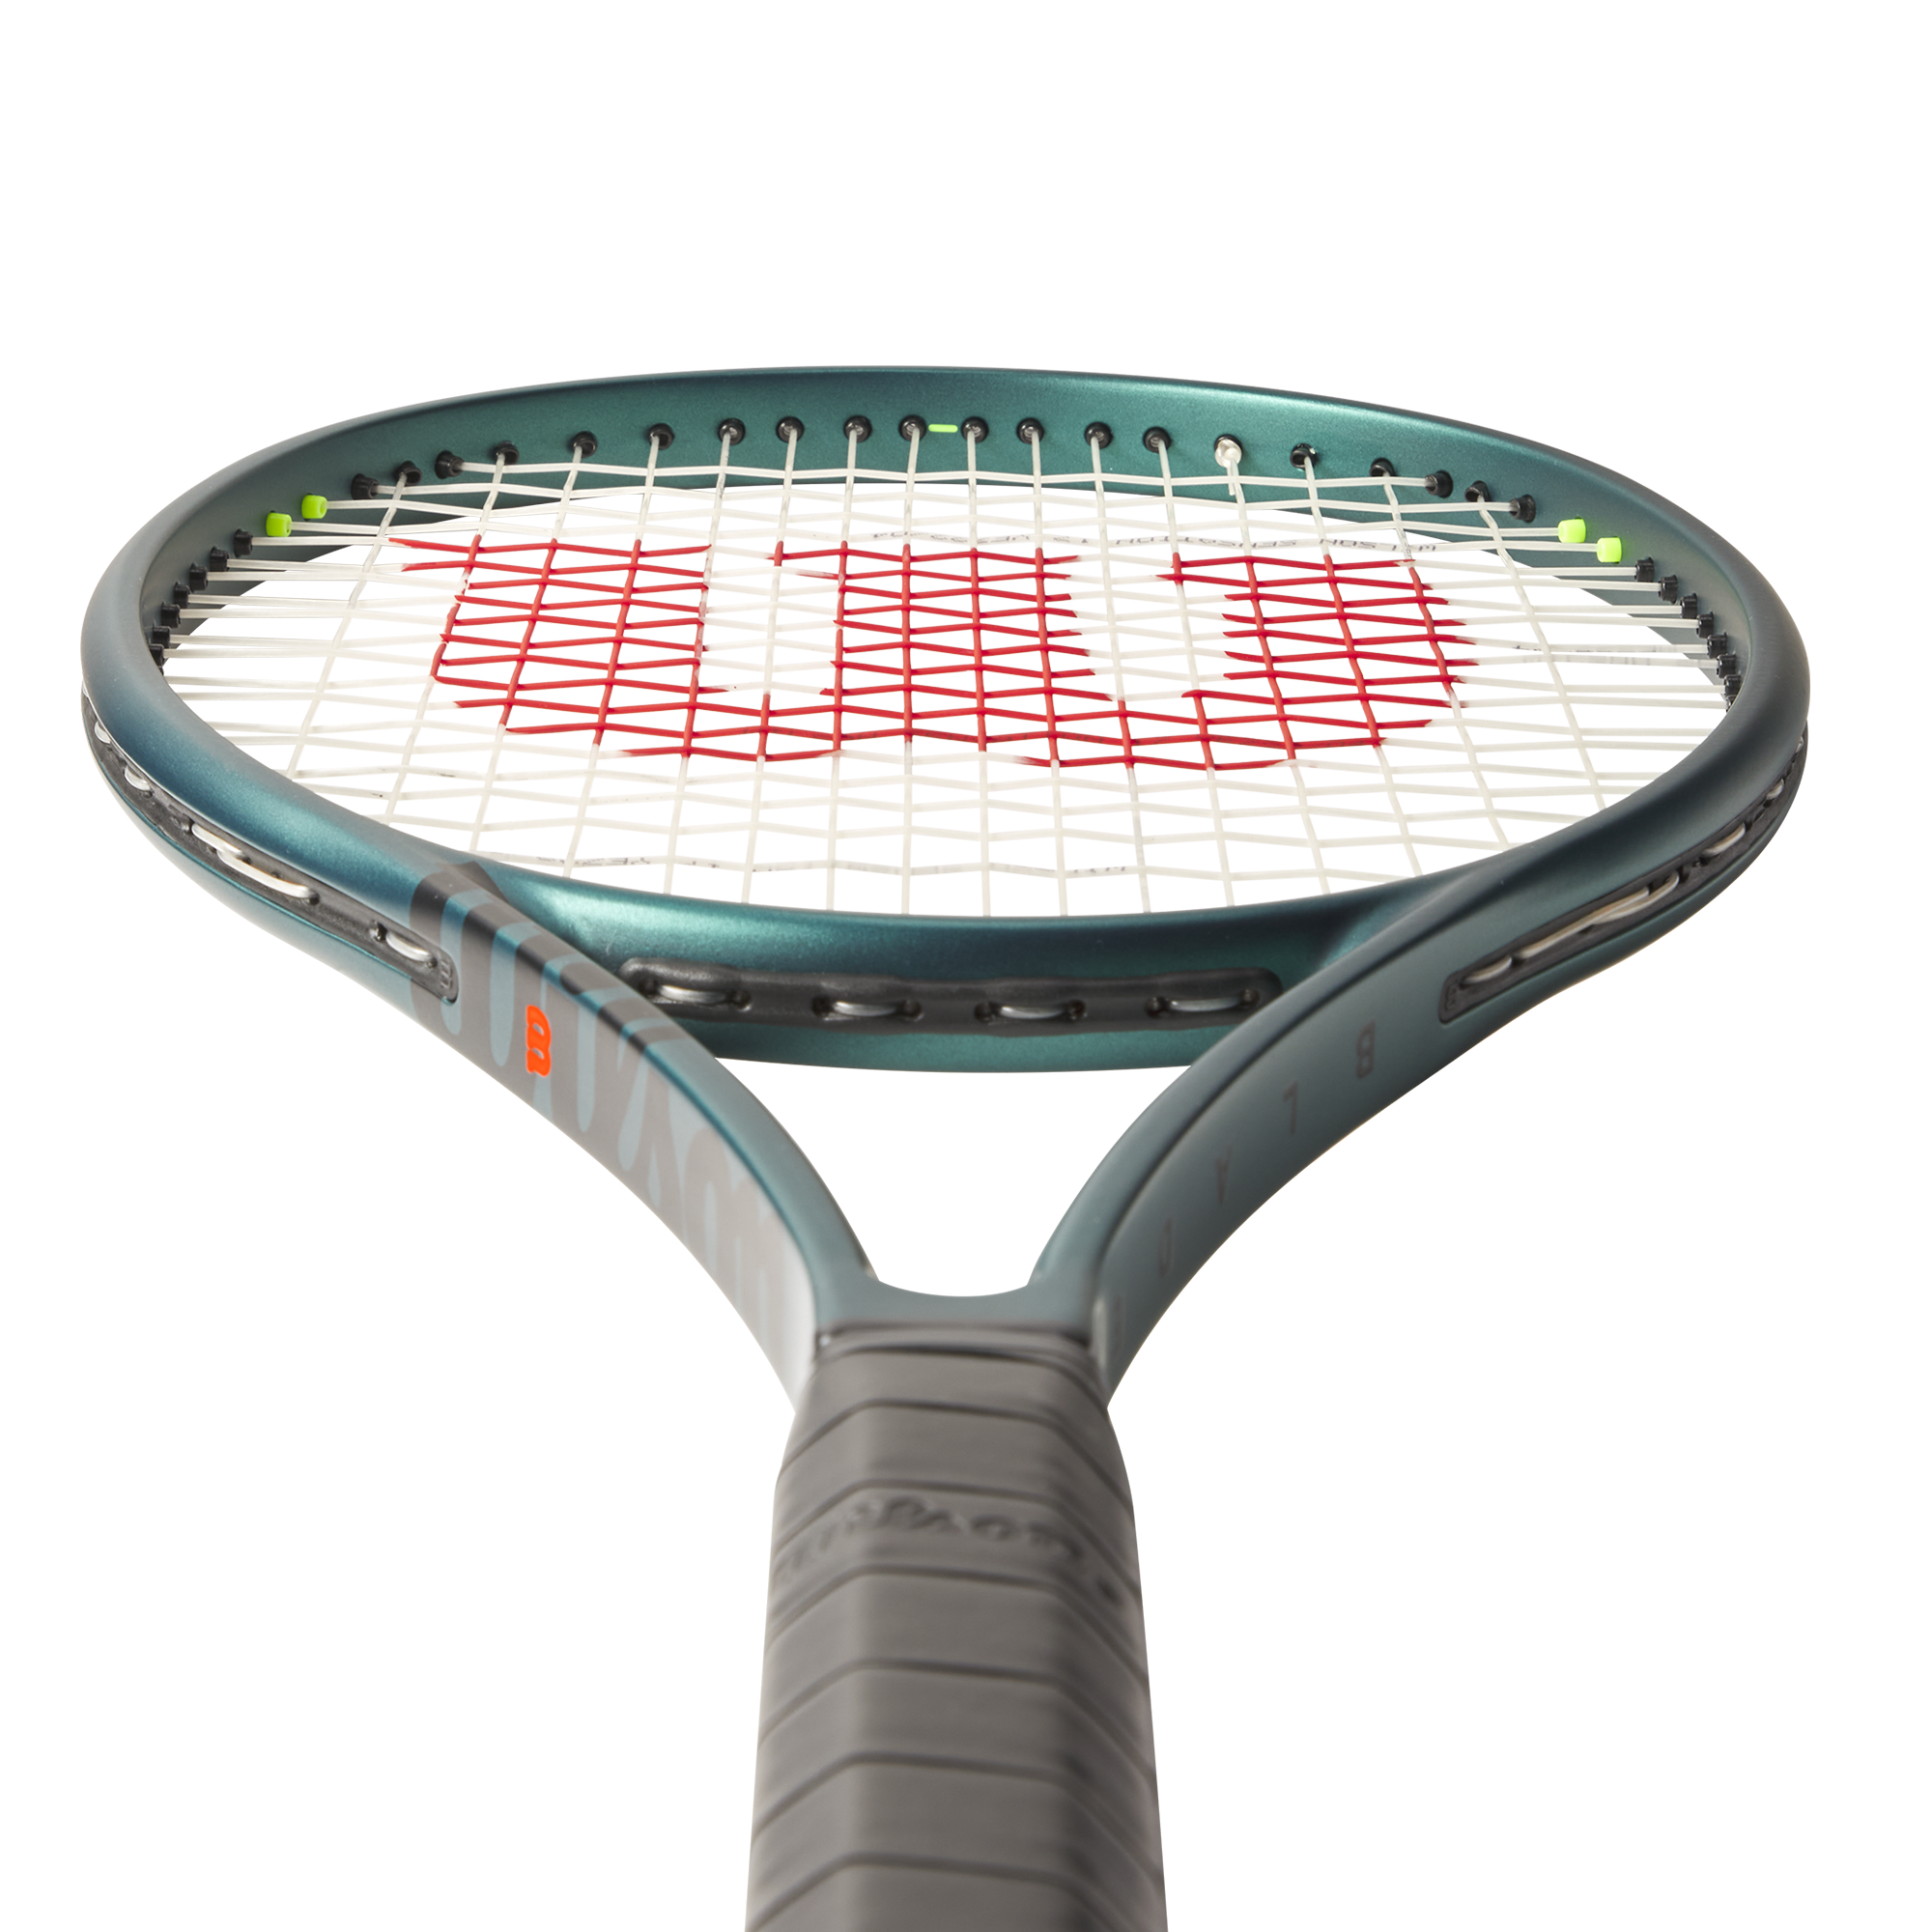 Wilson Blade 98 16X19 V9 Tennis Racquet